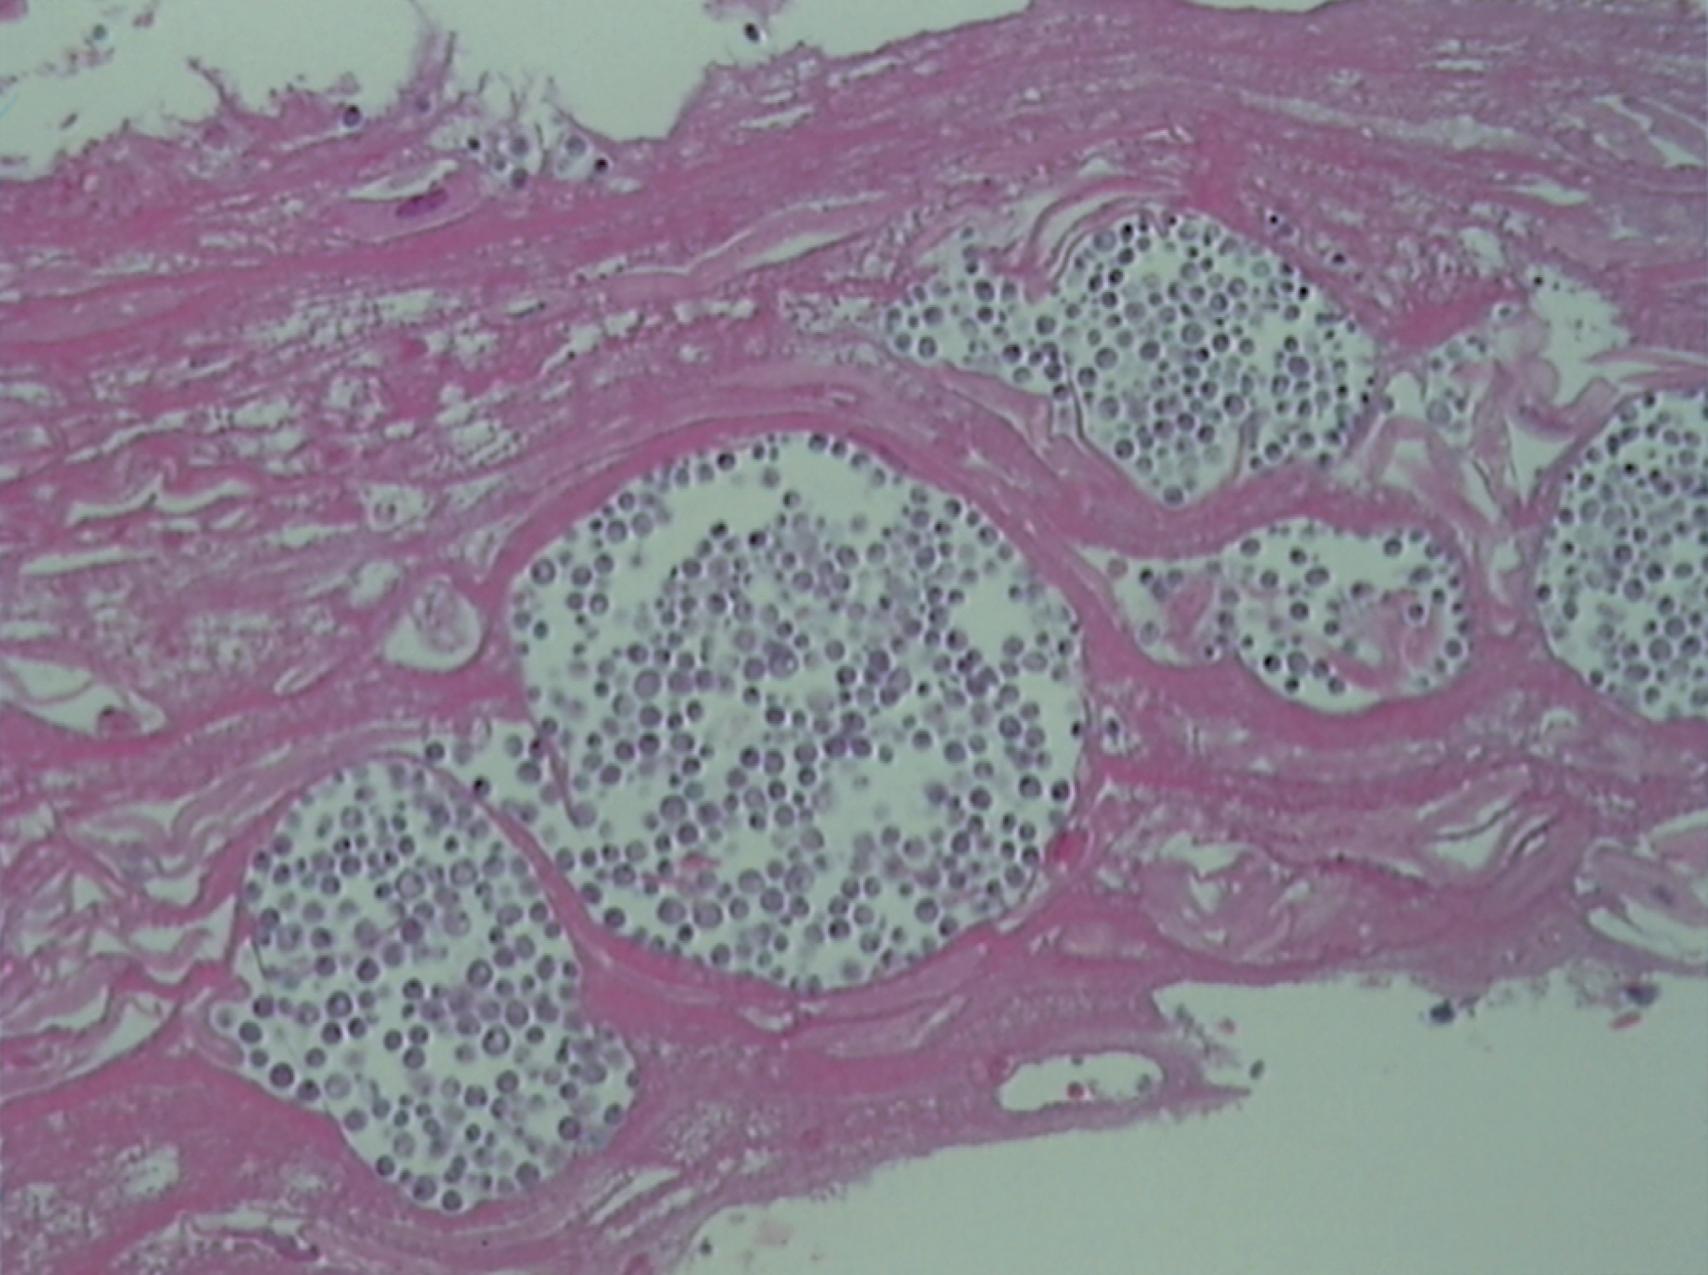 Fig. 23.1, Invasive Candida Esophagitis.